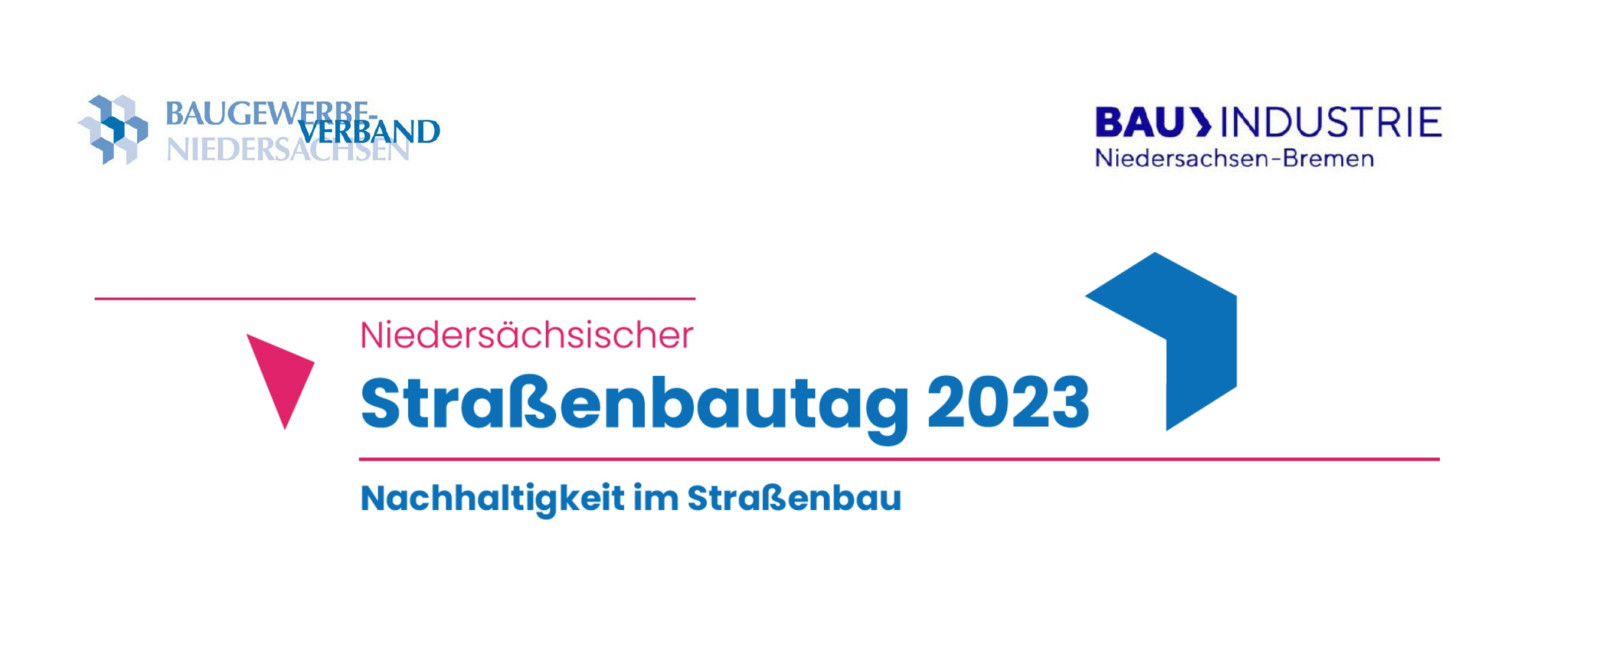 Nachhaltigkeit im Straßenbau und viele andere interessante Themen erwarten die Teilnehmerinnen und Teilnehmer des „Niedersächsischen Straßenbautags 2023“.